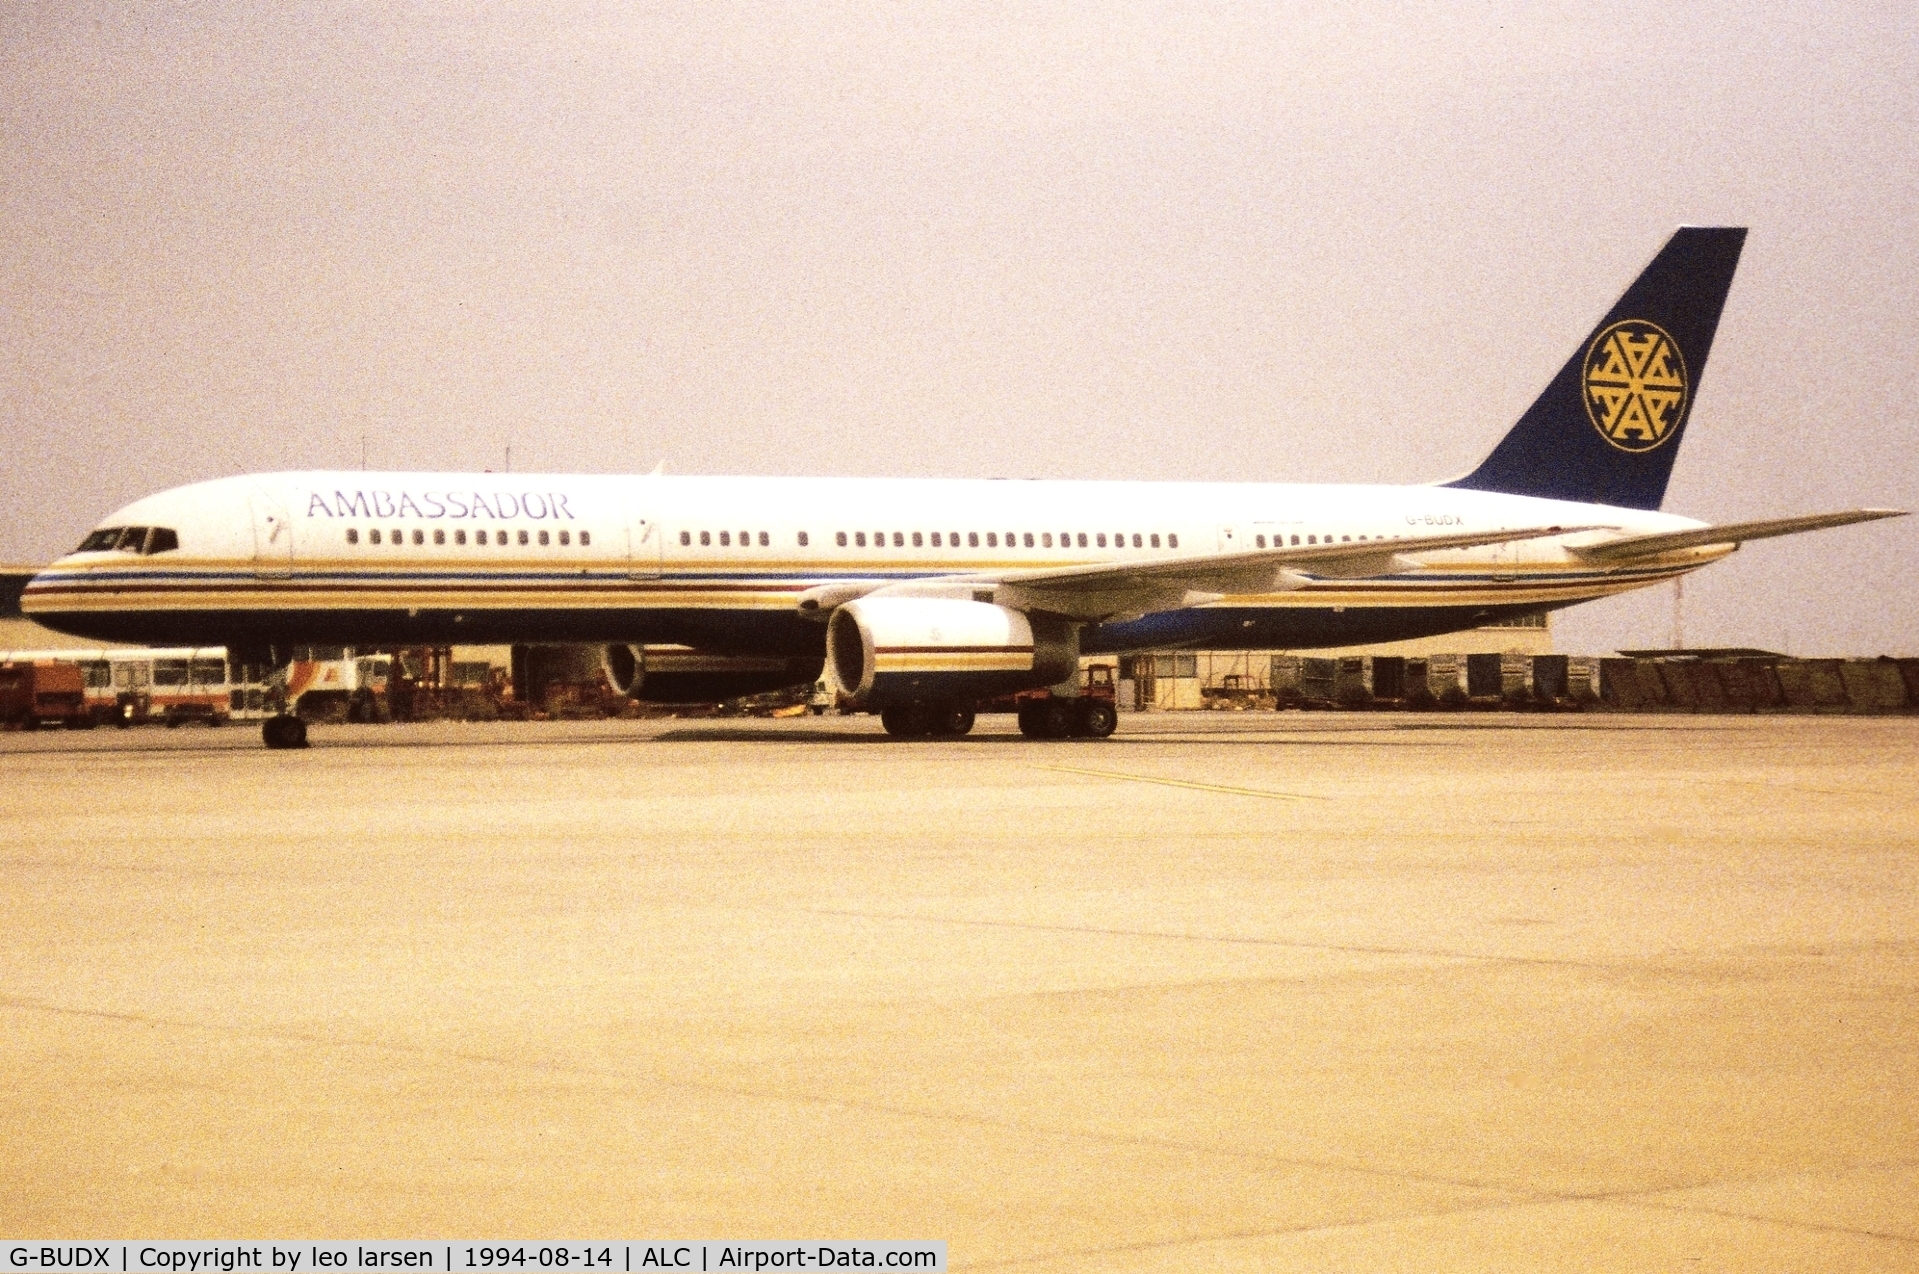 G-BUDX, 1992 Boeing 757-236 C/N 25592, Alicanta 14.8.1994